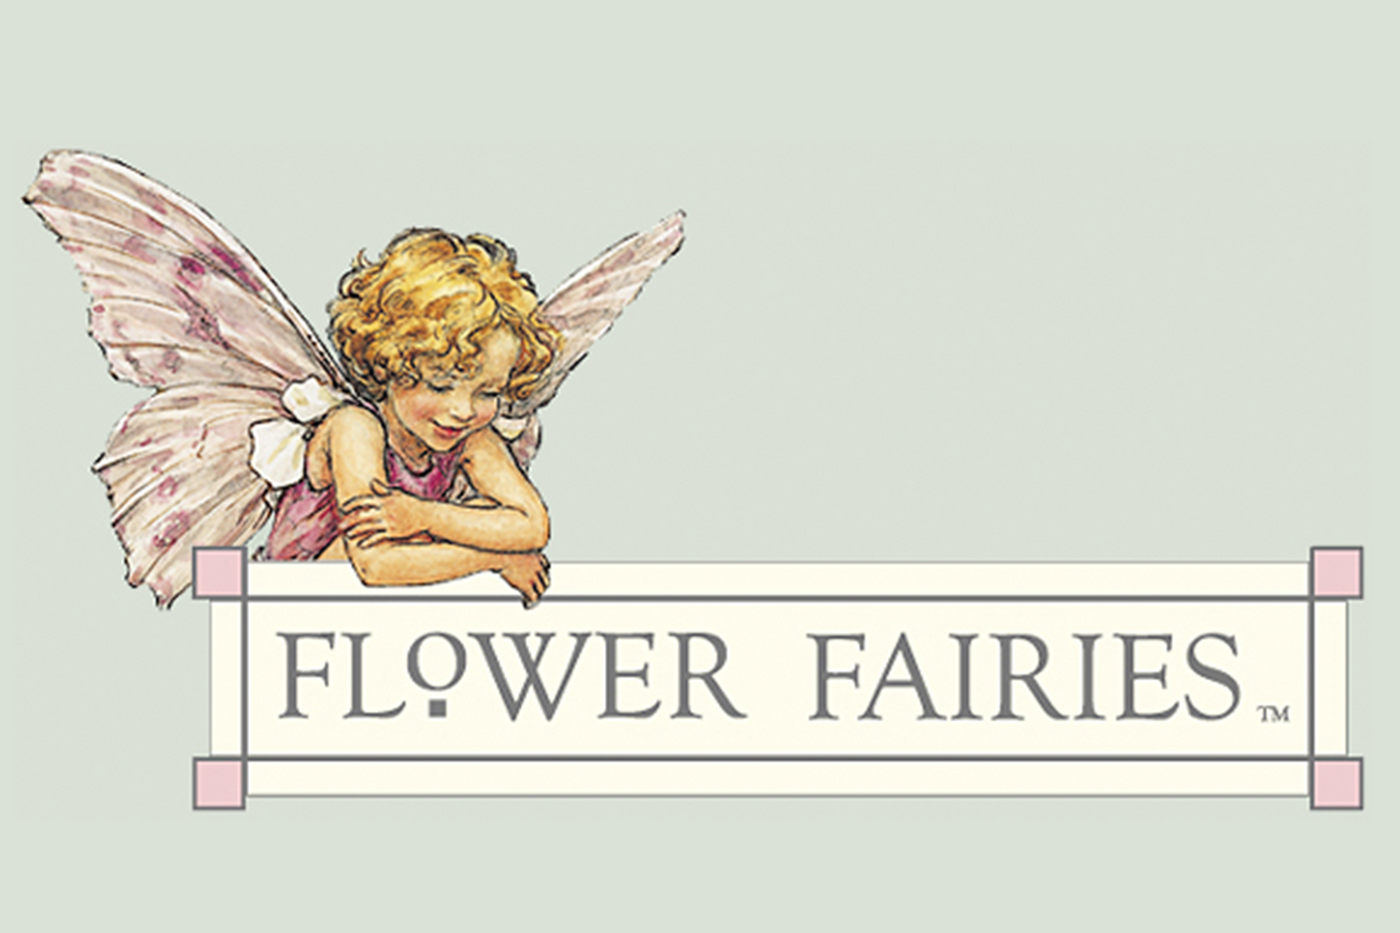 Flower fairies